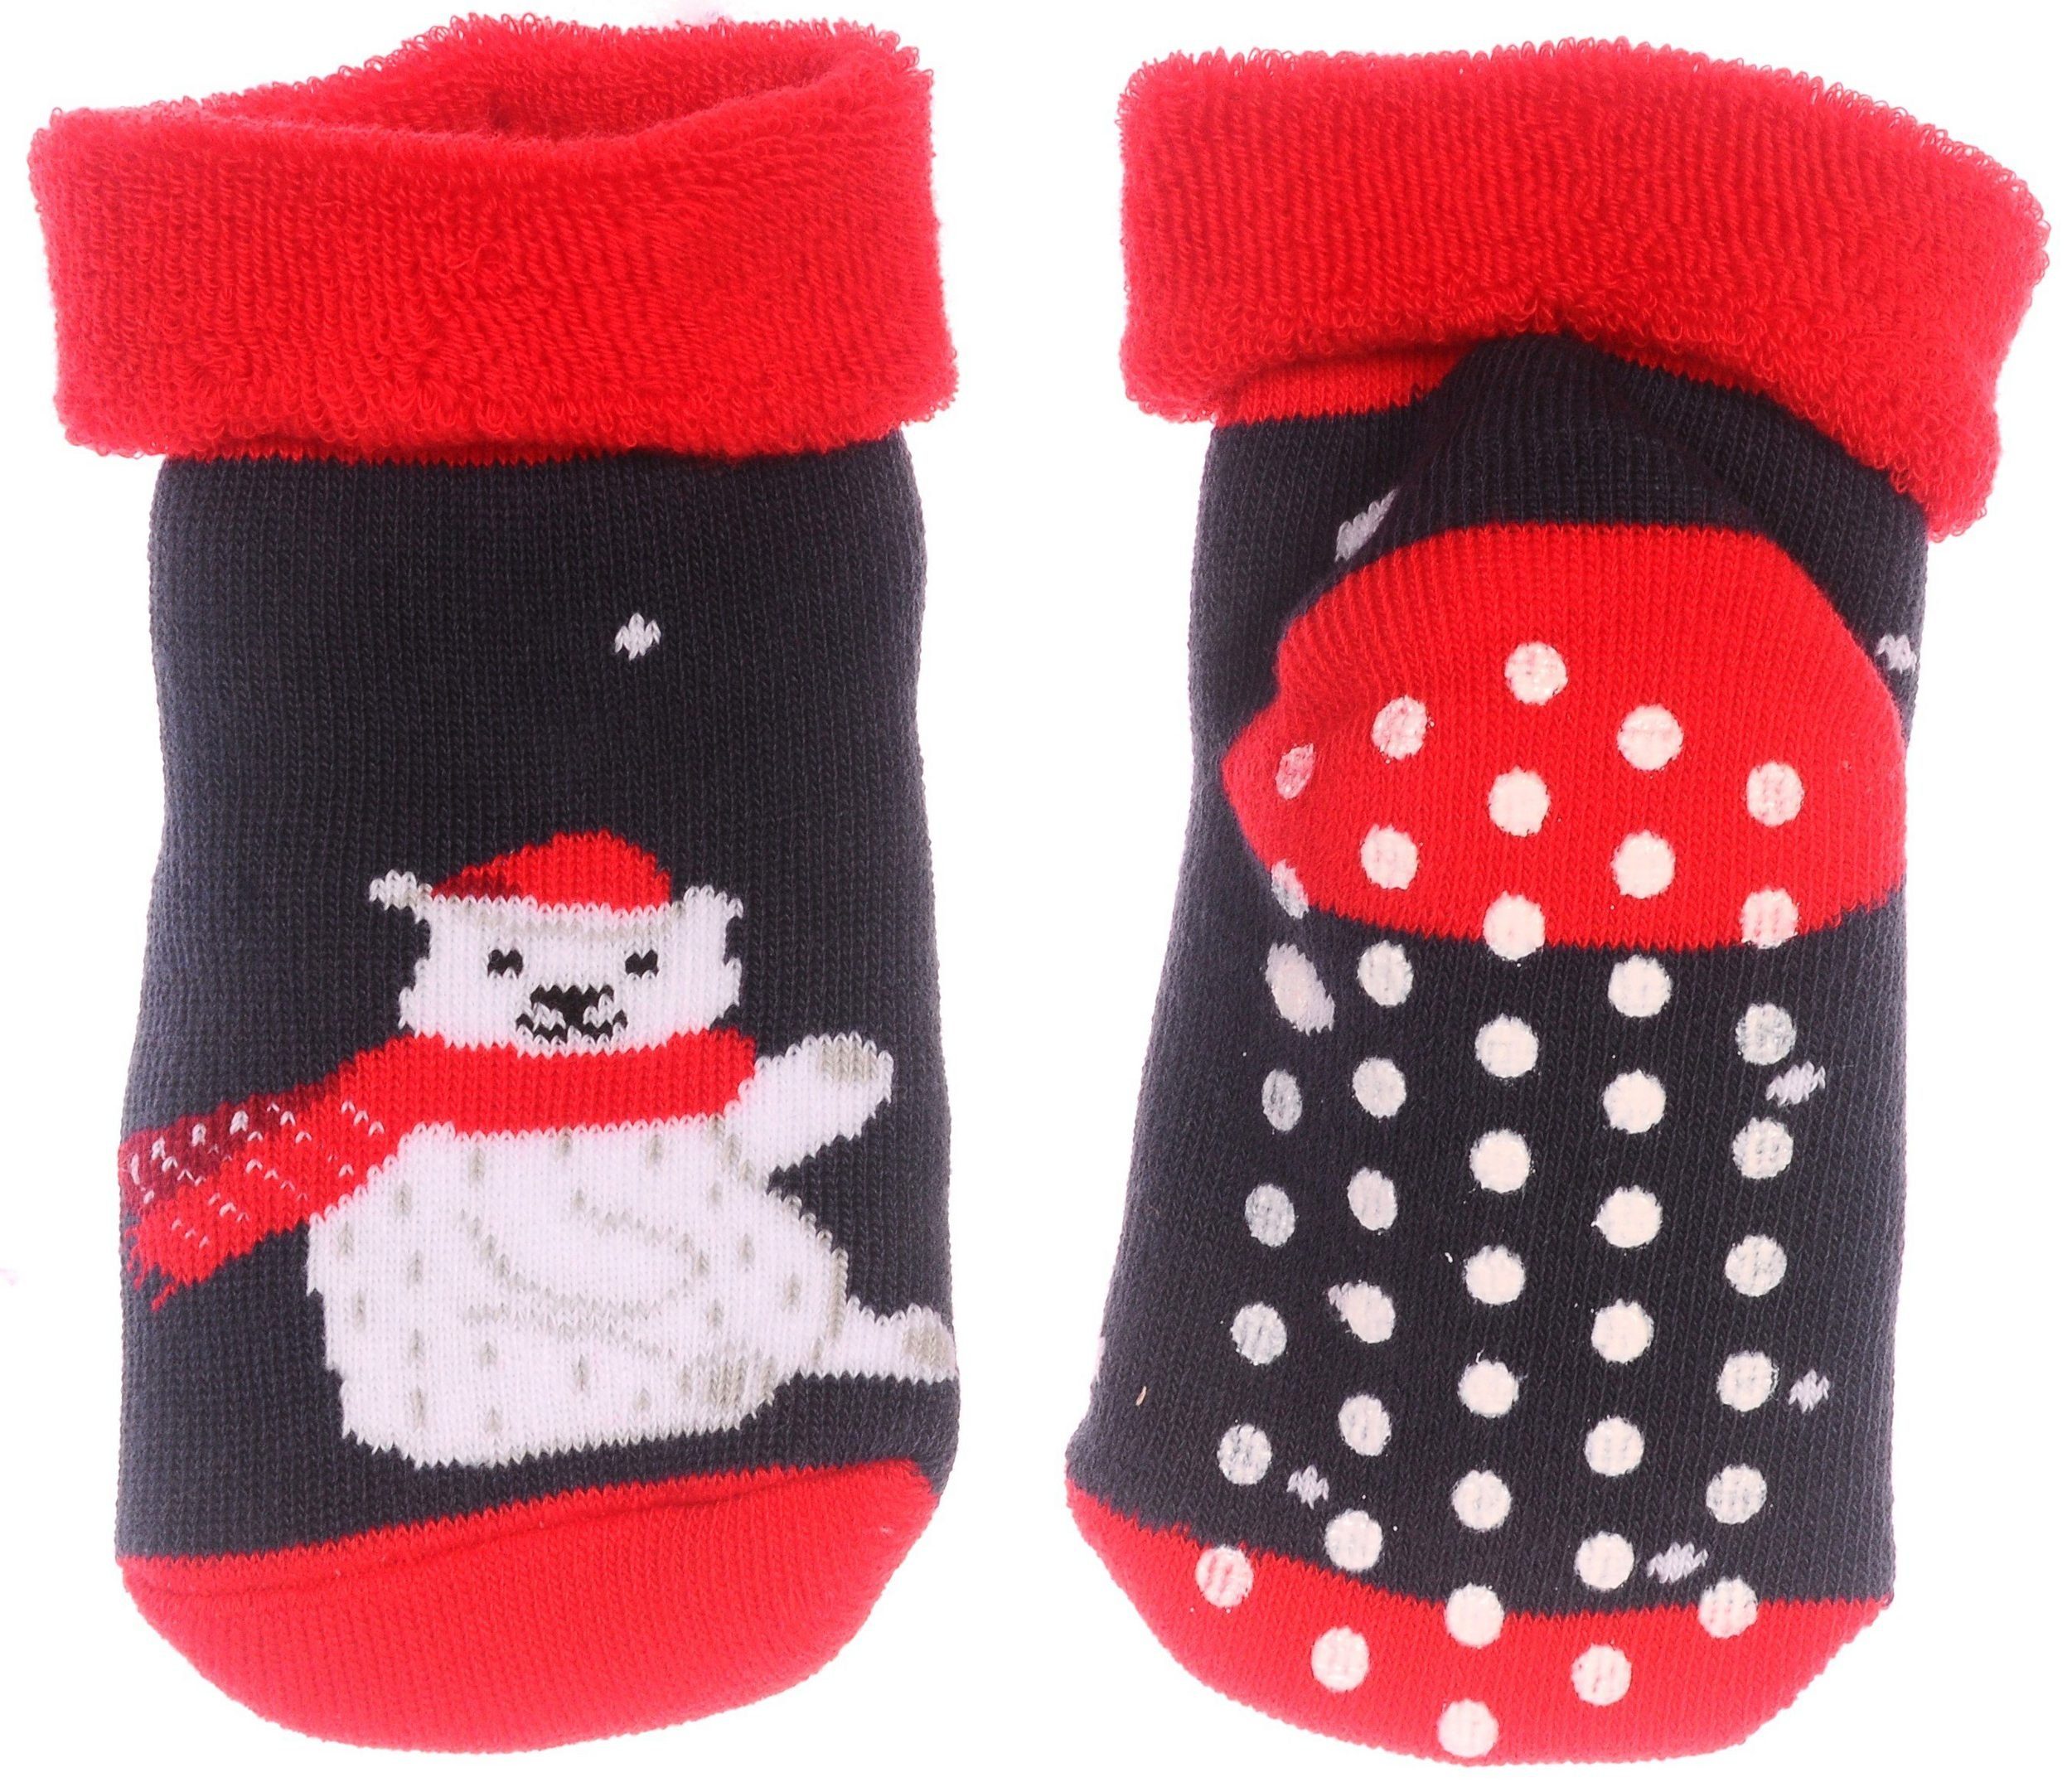 Martinex Thermosocken Socken genoppte Baby Kinder Weihnachtssocken Antirutschsocken 20 23 35 37 29 30 31 34 35 37